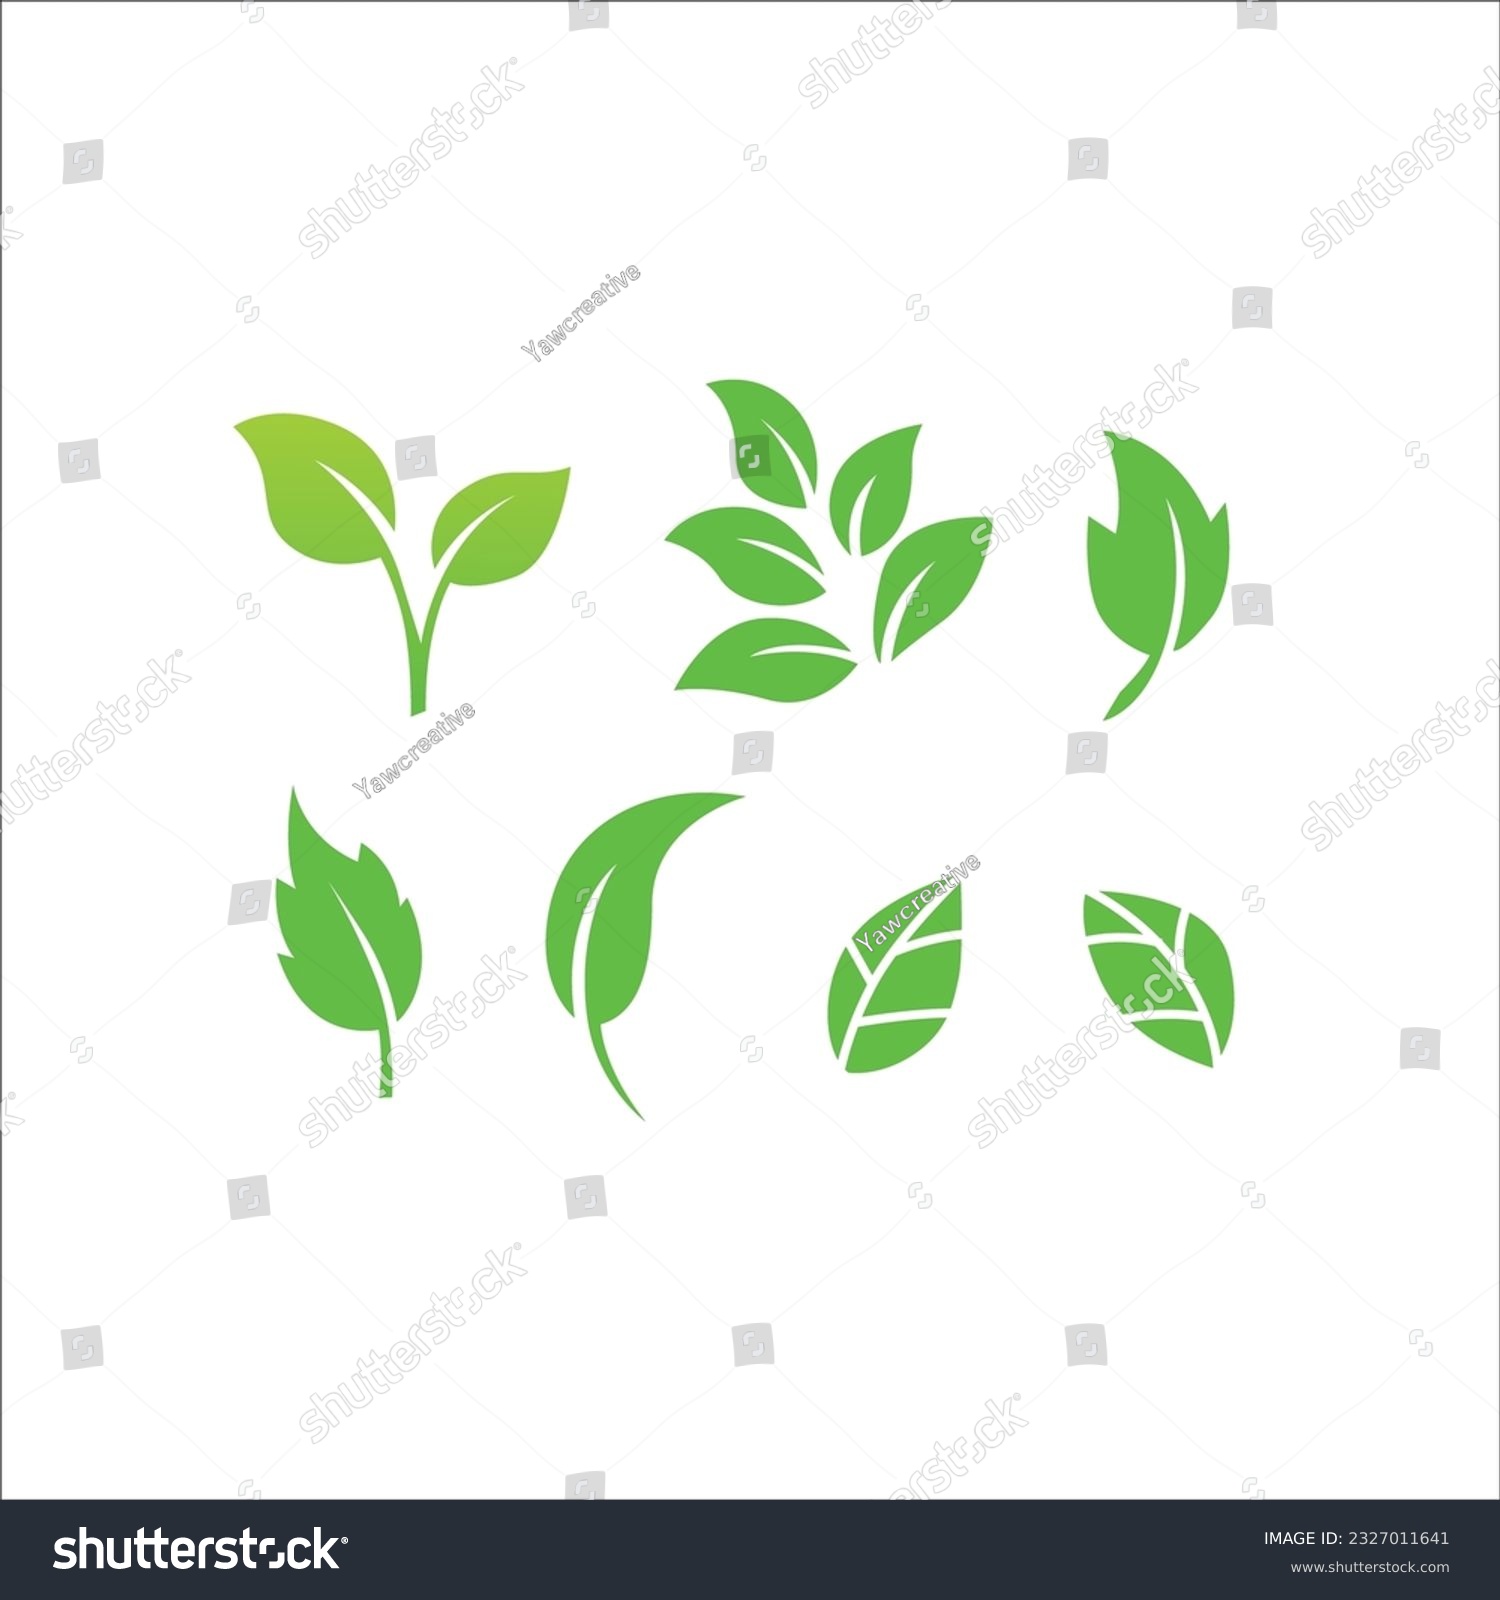 SVG of ikon daun hijau ditetapkan pada latar belakang putih svg